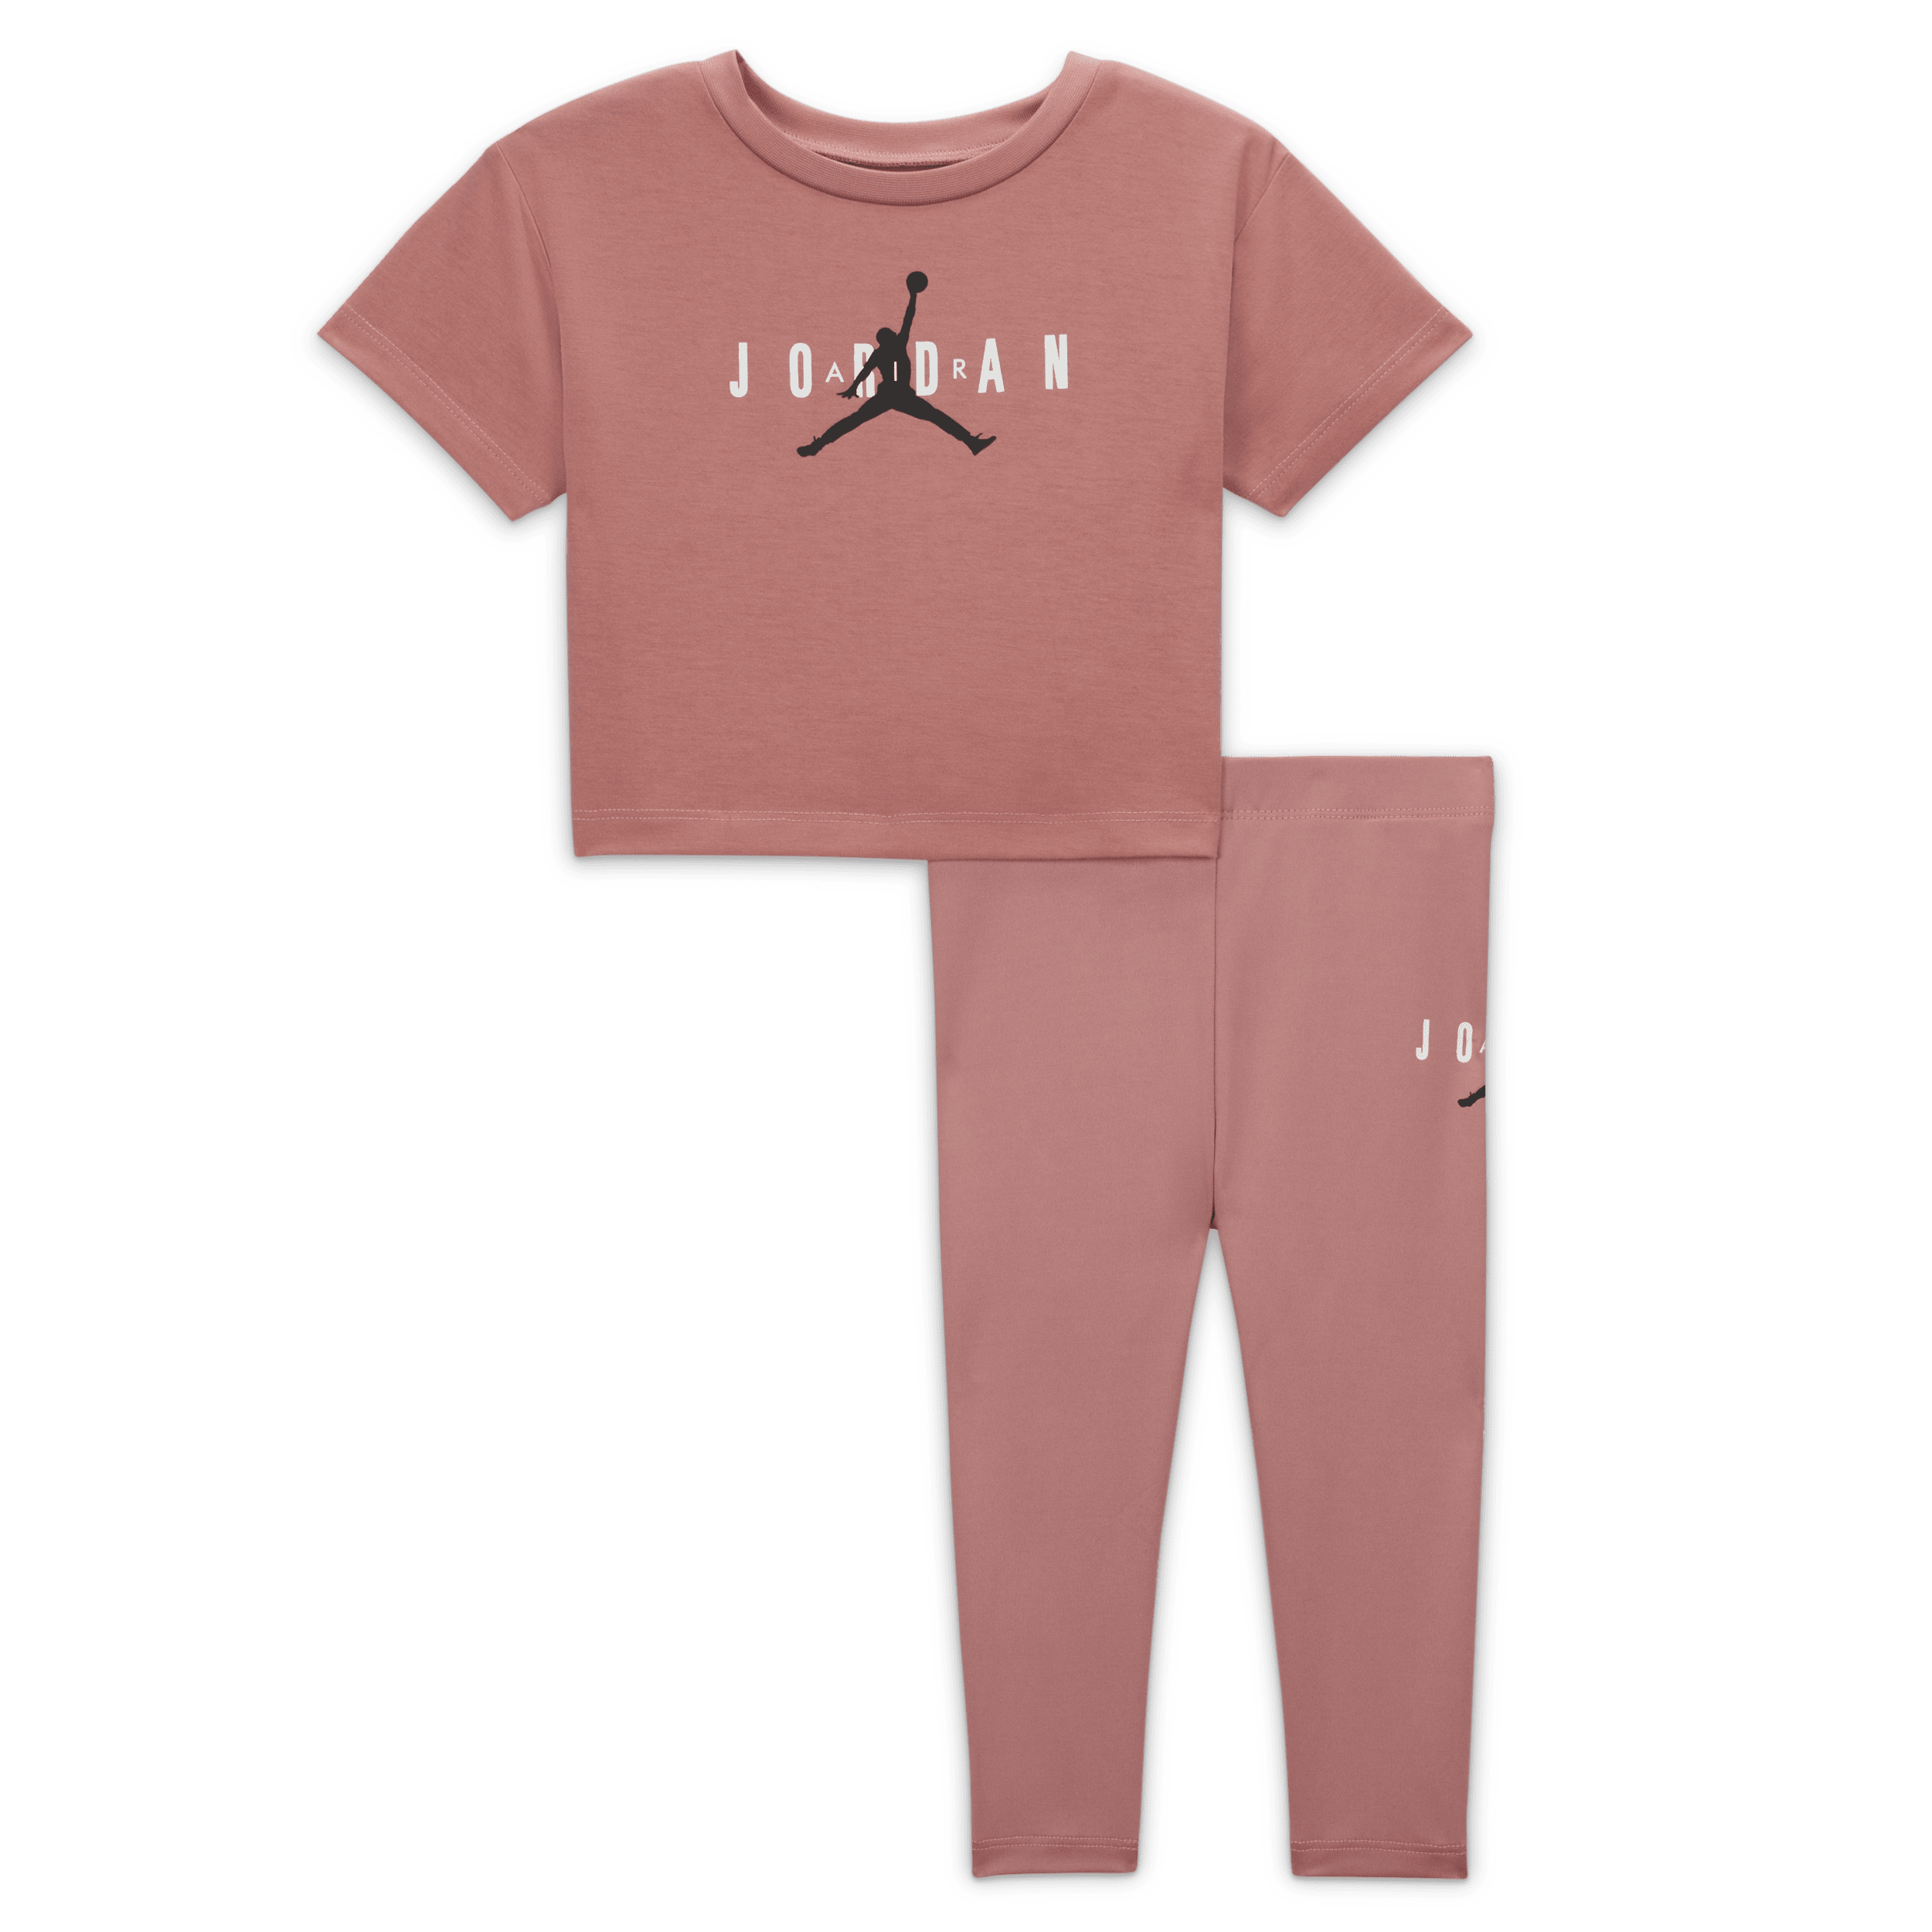 Nike Completo sostenibile con leggings Jordan – Bebè (12-24 mesi) - Rosa